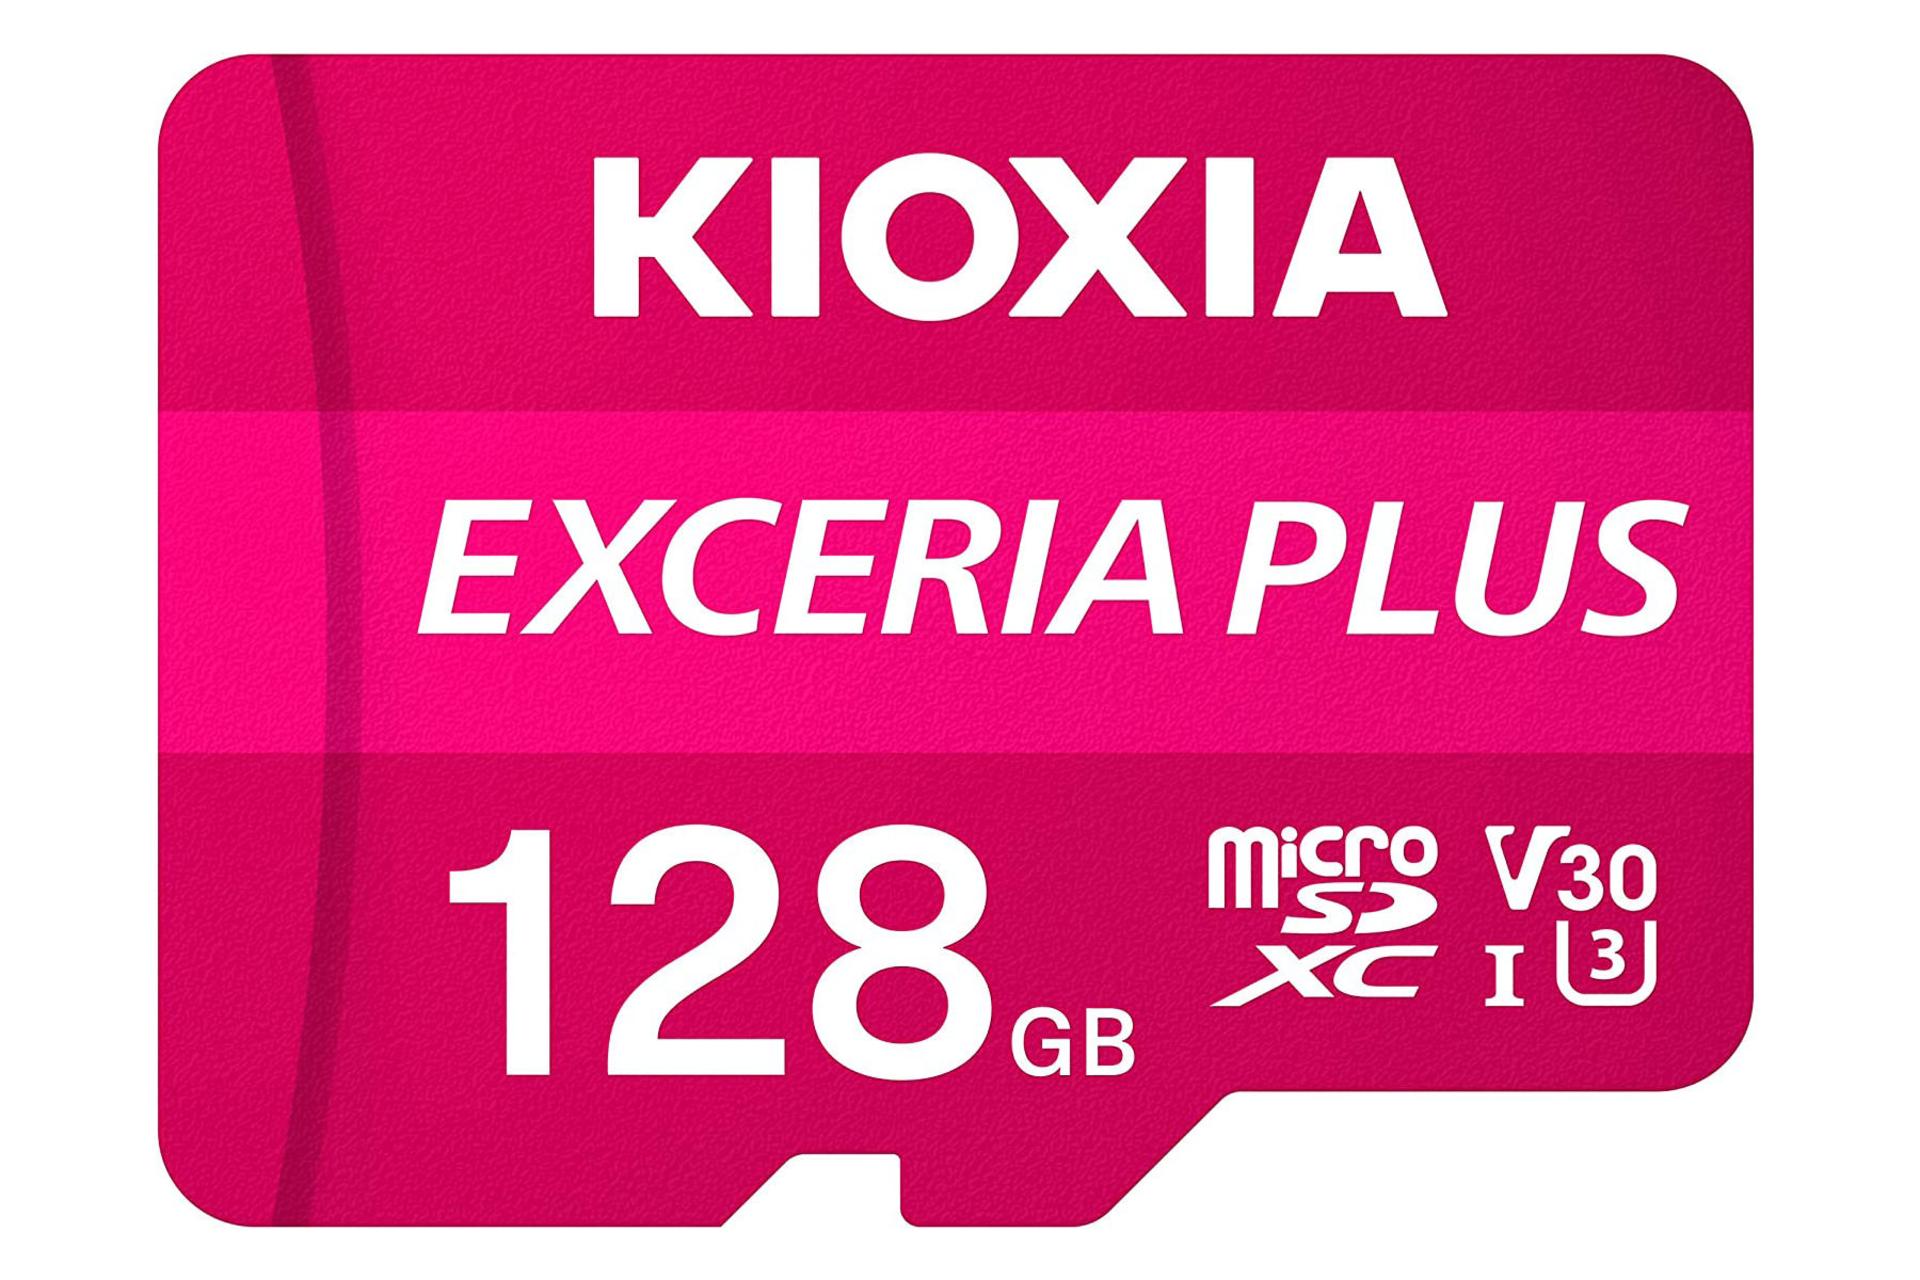 کارت حافظه کیوکسیا microSDXC با ظرفیت 128 گیگابایت مدل EXCERIA PLUS V30 کلاس 10